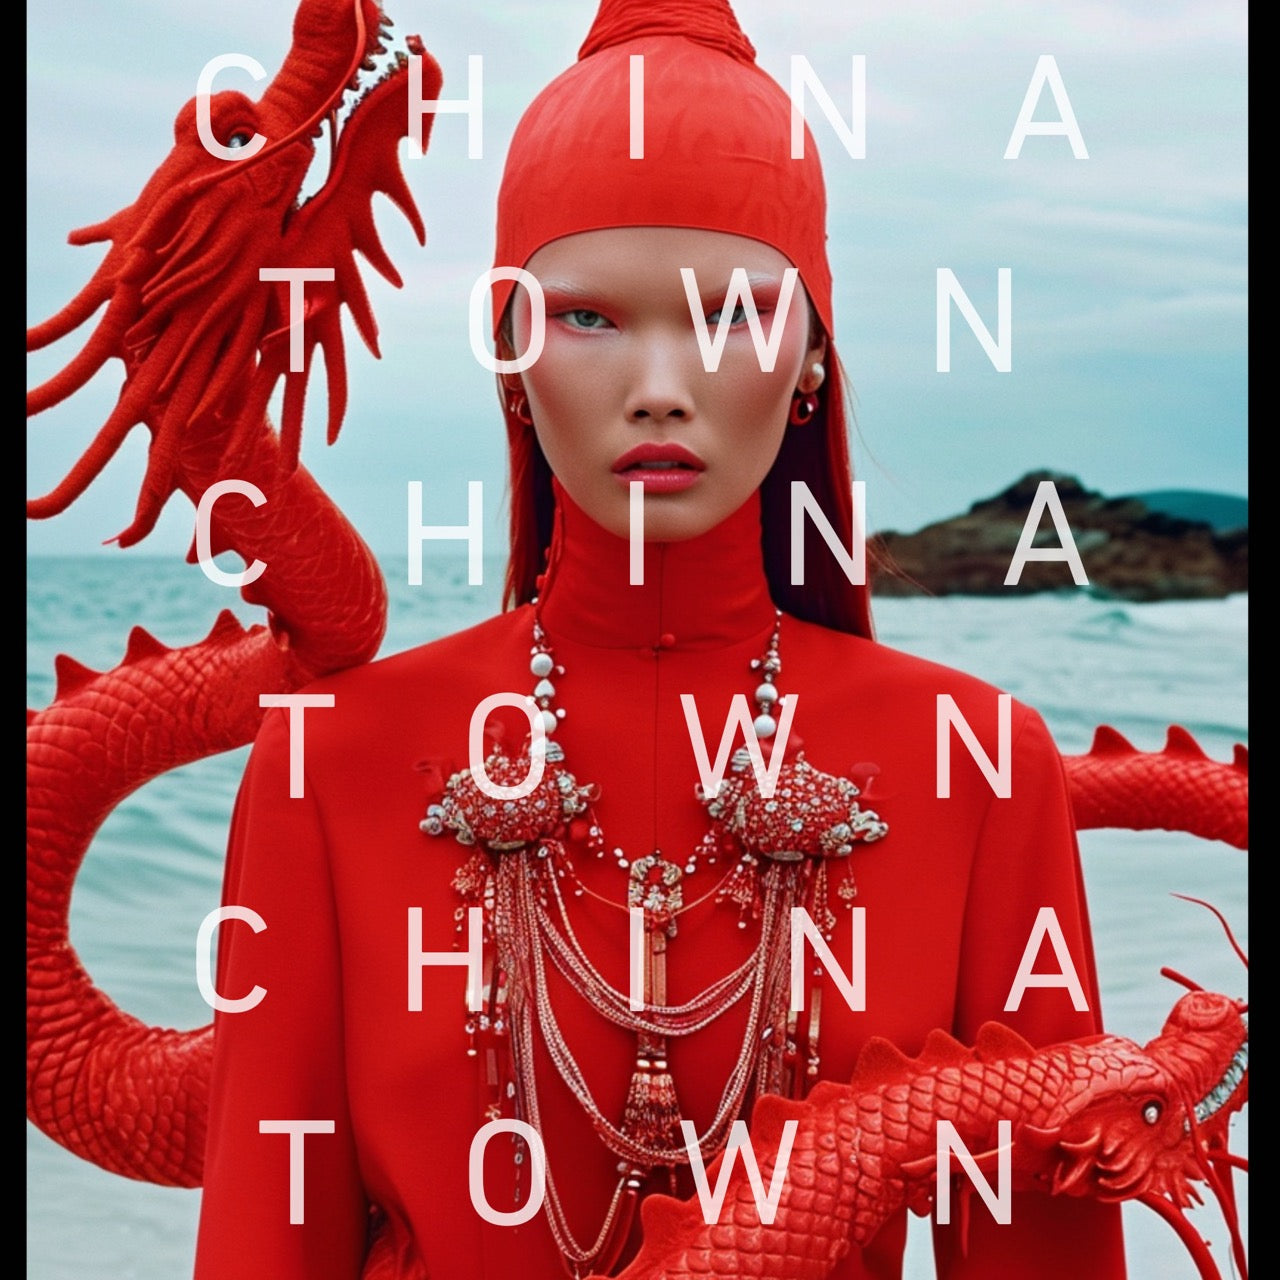 Chinatown-mixology-session.jpg